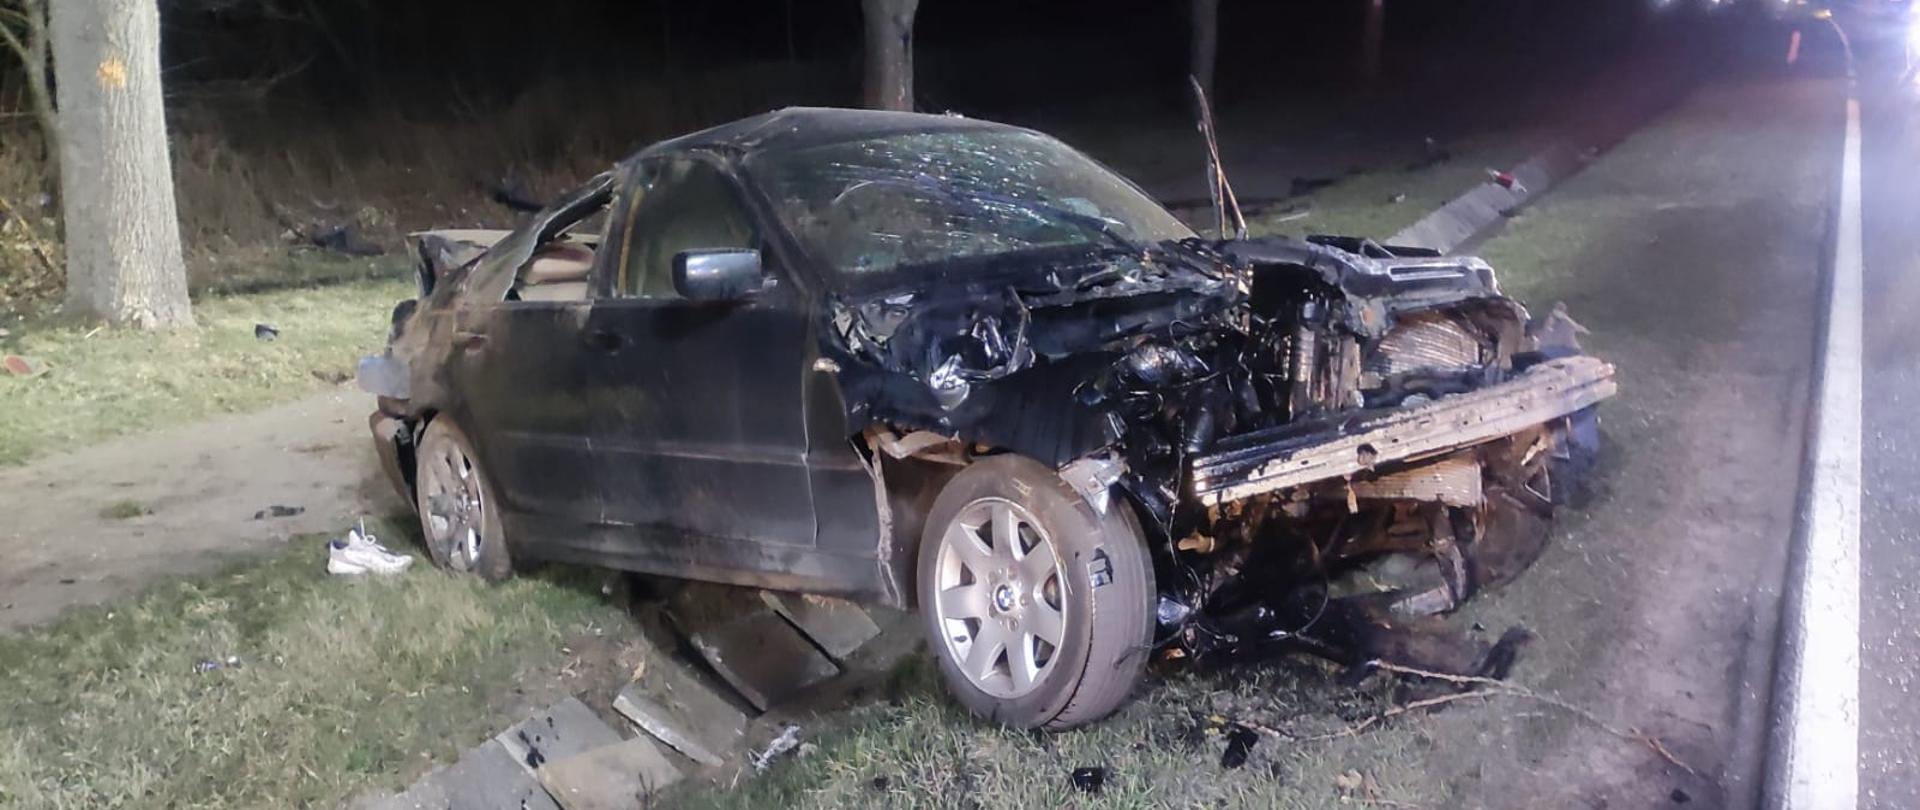 Zdjęcie przedstawia zniszczony samochód osobowy znajdujący się w pasie drogi krajowej nr 29, który brał udział w zdarzeniu. Zdjęcie wykonane zostało w porze wieczornej. 